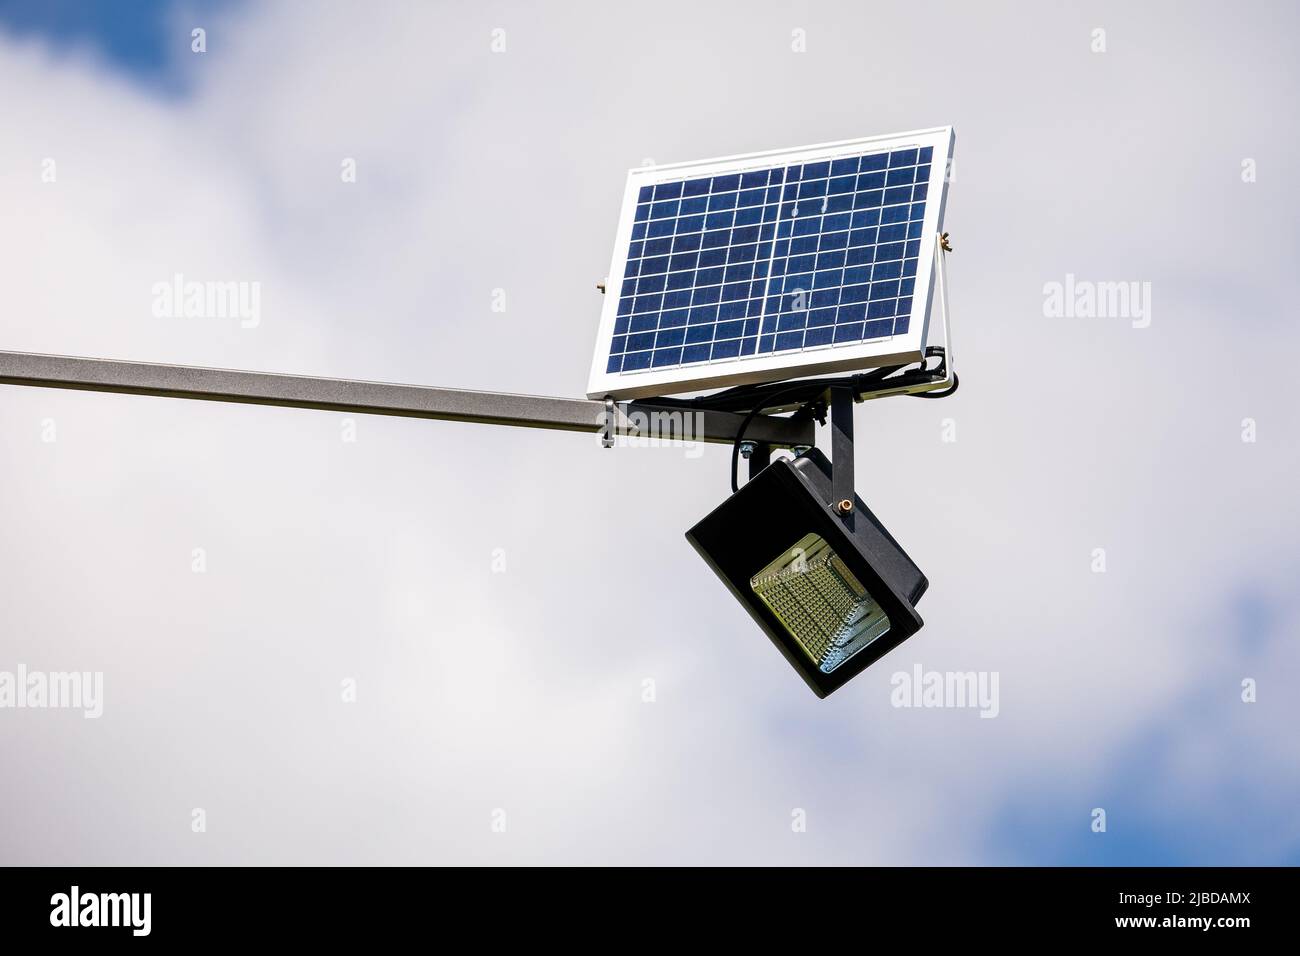 LED-Beleuchtung und Solarpanel. Außenwerbung, Werbeplakat Stockfotografie -  Alamy